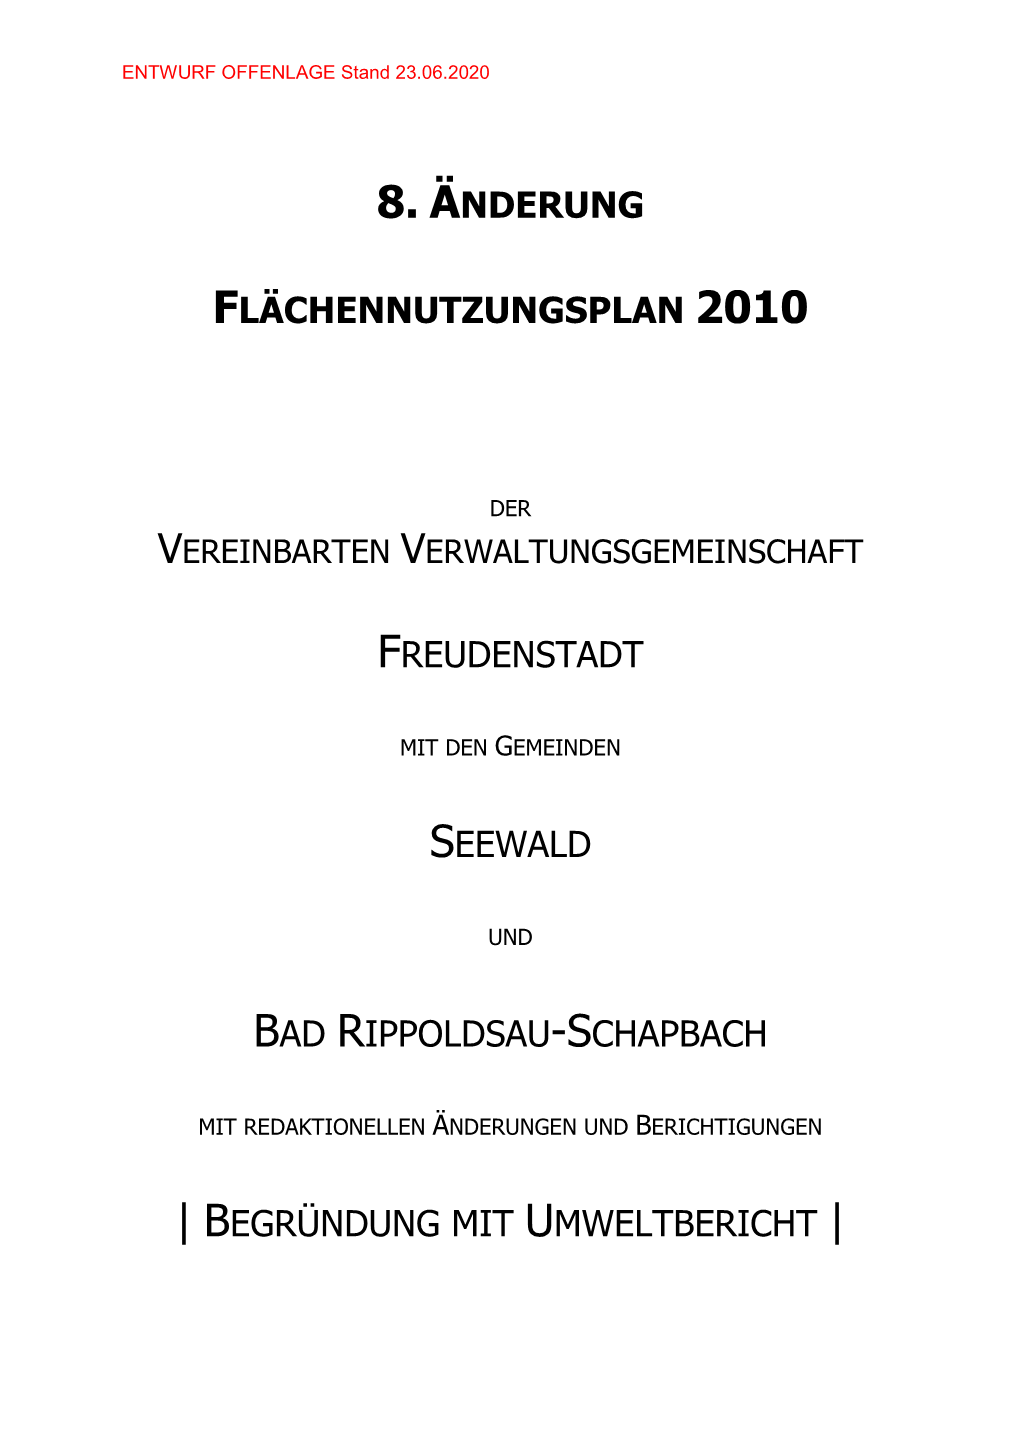 FNP 8. Änderung; VVG Freudenstadt Mit Seewald Und Bad Rippoldsau-Schapbach